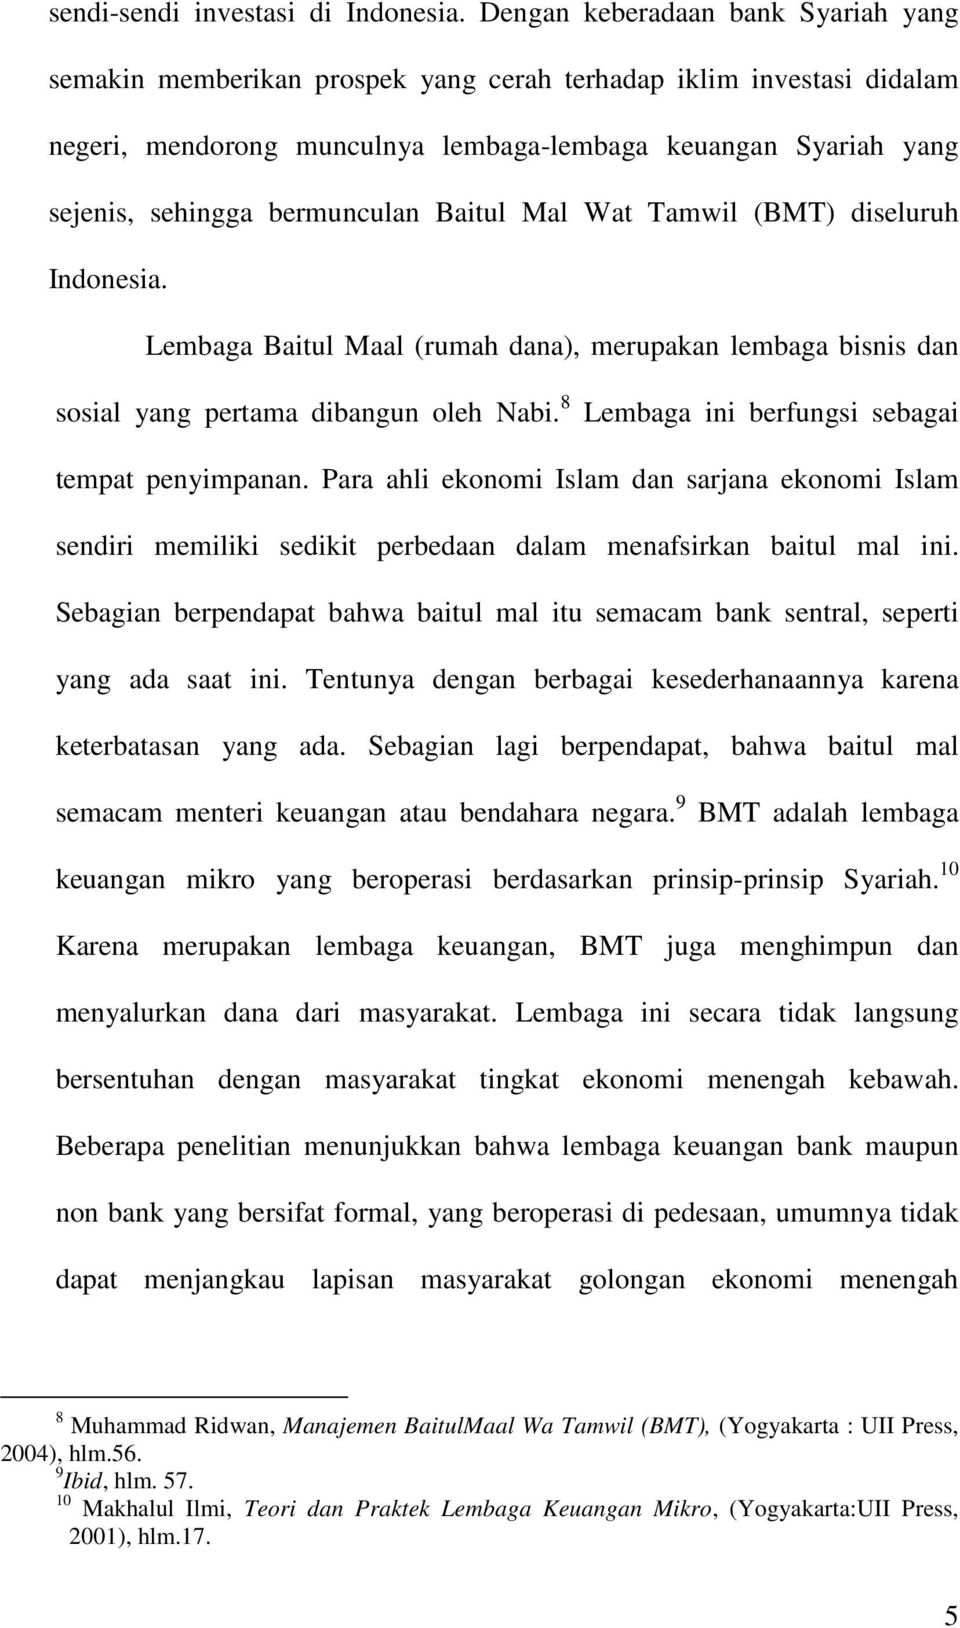 bermunculan Baitul Mal Wat Tamwil (BMT) diseluruh Indonesia. Lembaga Baitul Maal (rumah dana), merupakan lembaga bisnis dan sosial yang pertama dibangun oleh Nabi.